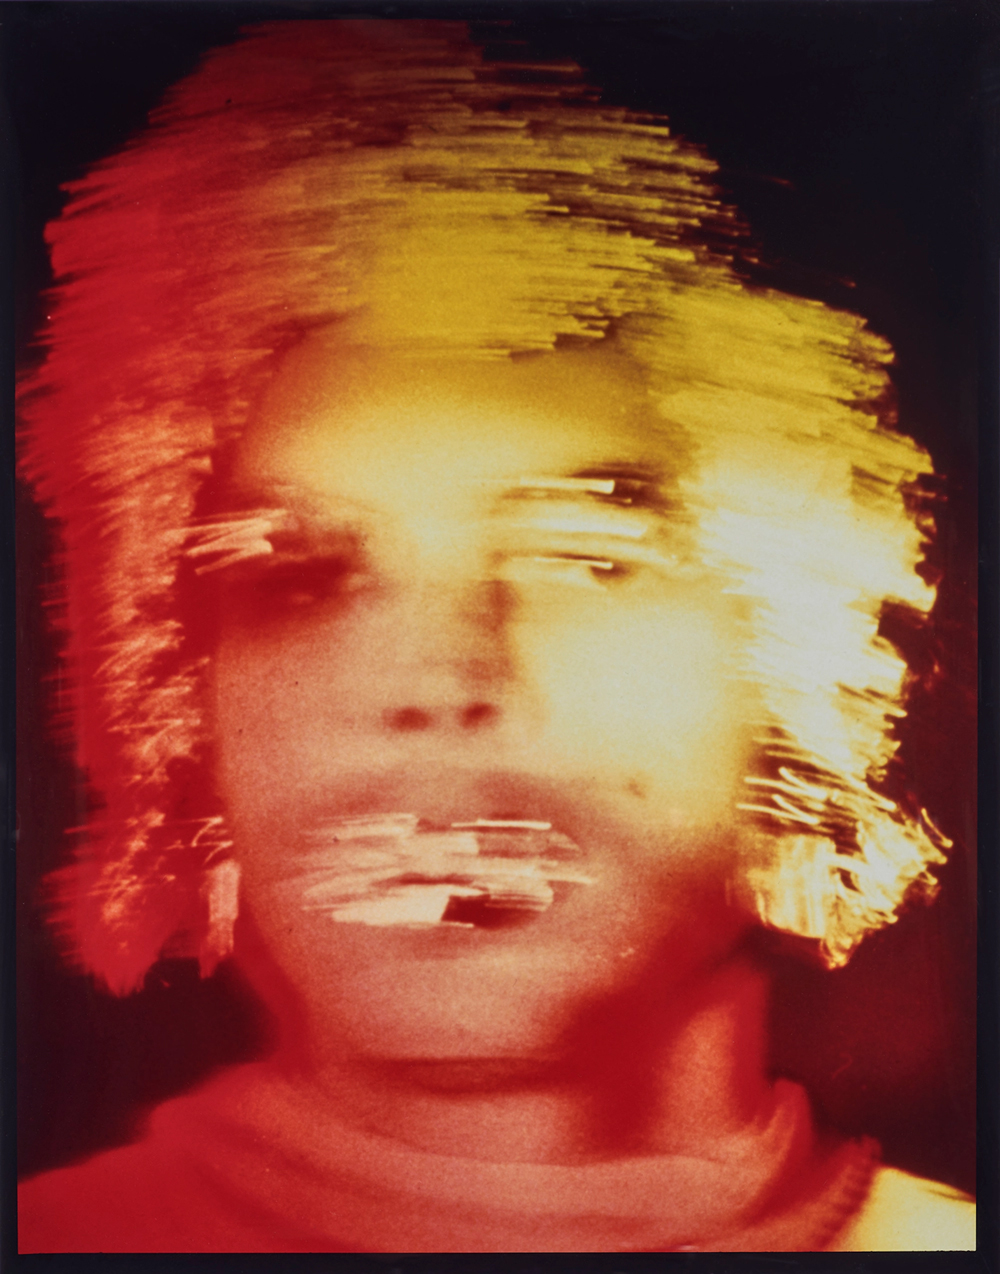 Jimmy DeSana, Aluminium Foil #4 (Self- Portrait), 1985 Photograph by Allen Phillips